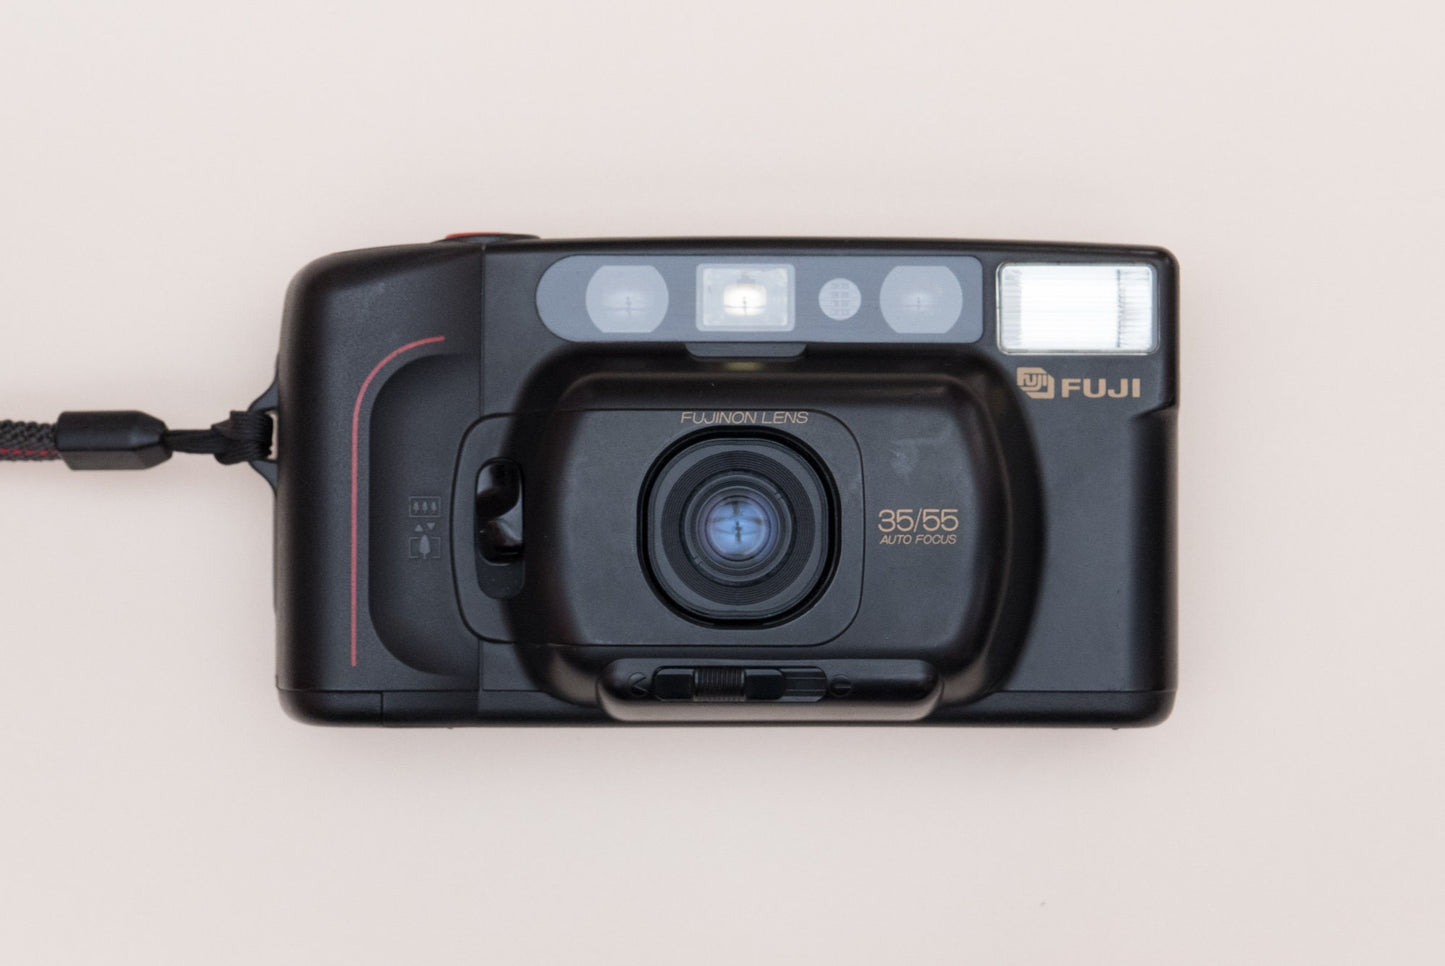 Fuji DL-160 Tele DUAL Compact 35mm Film Camera